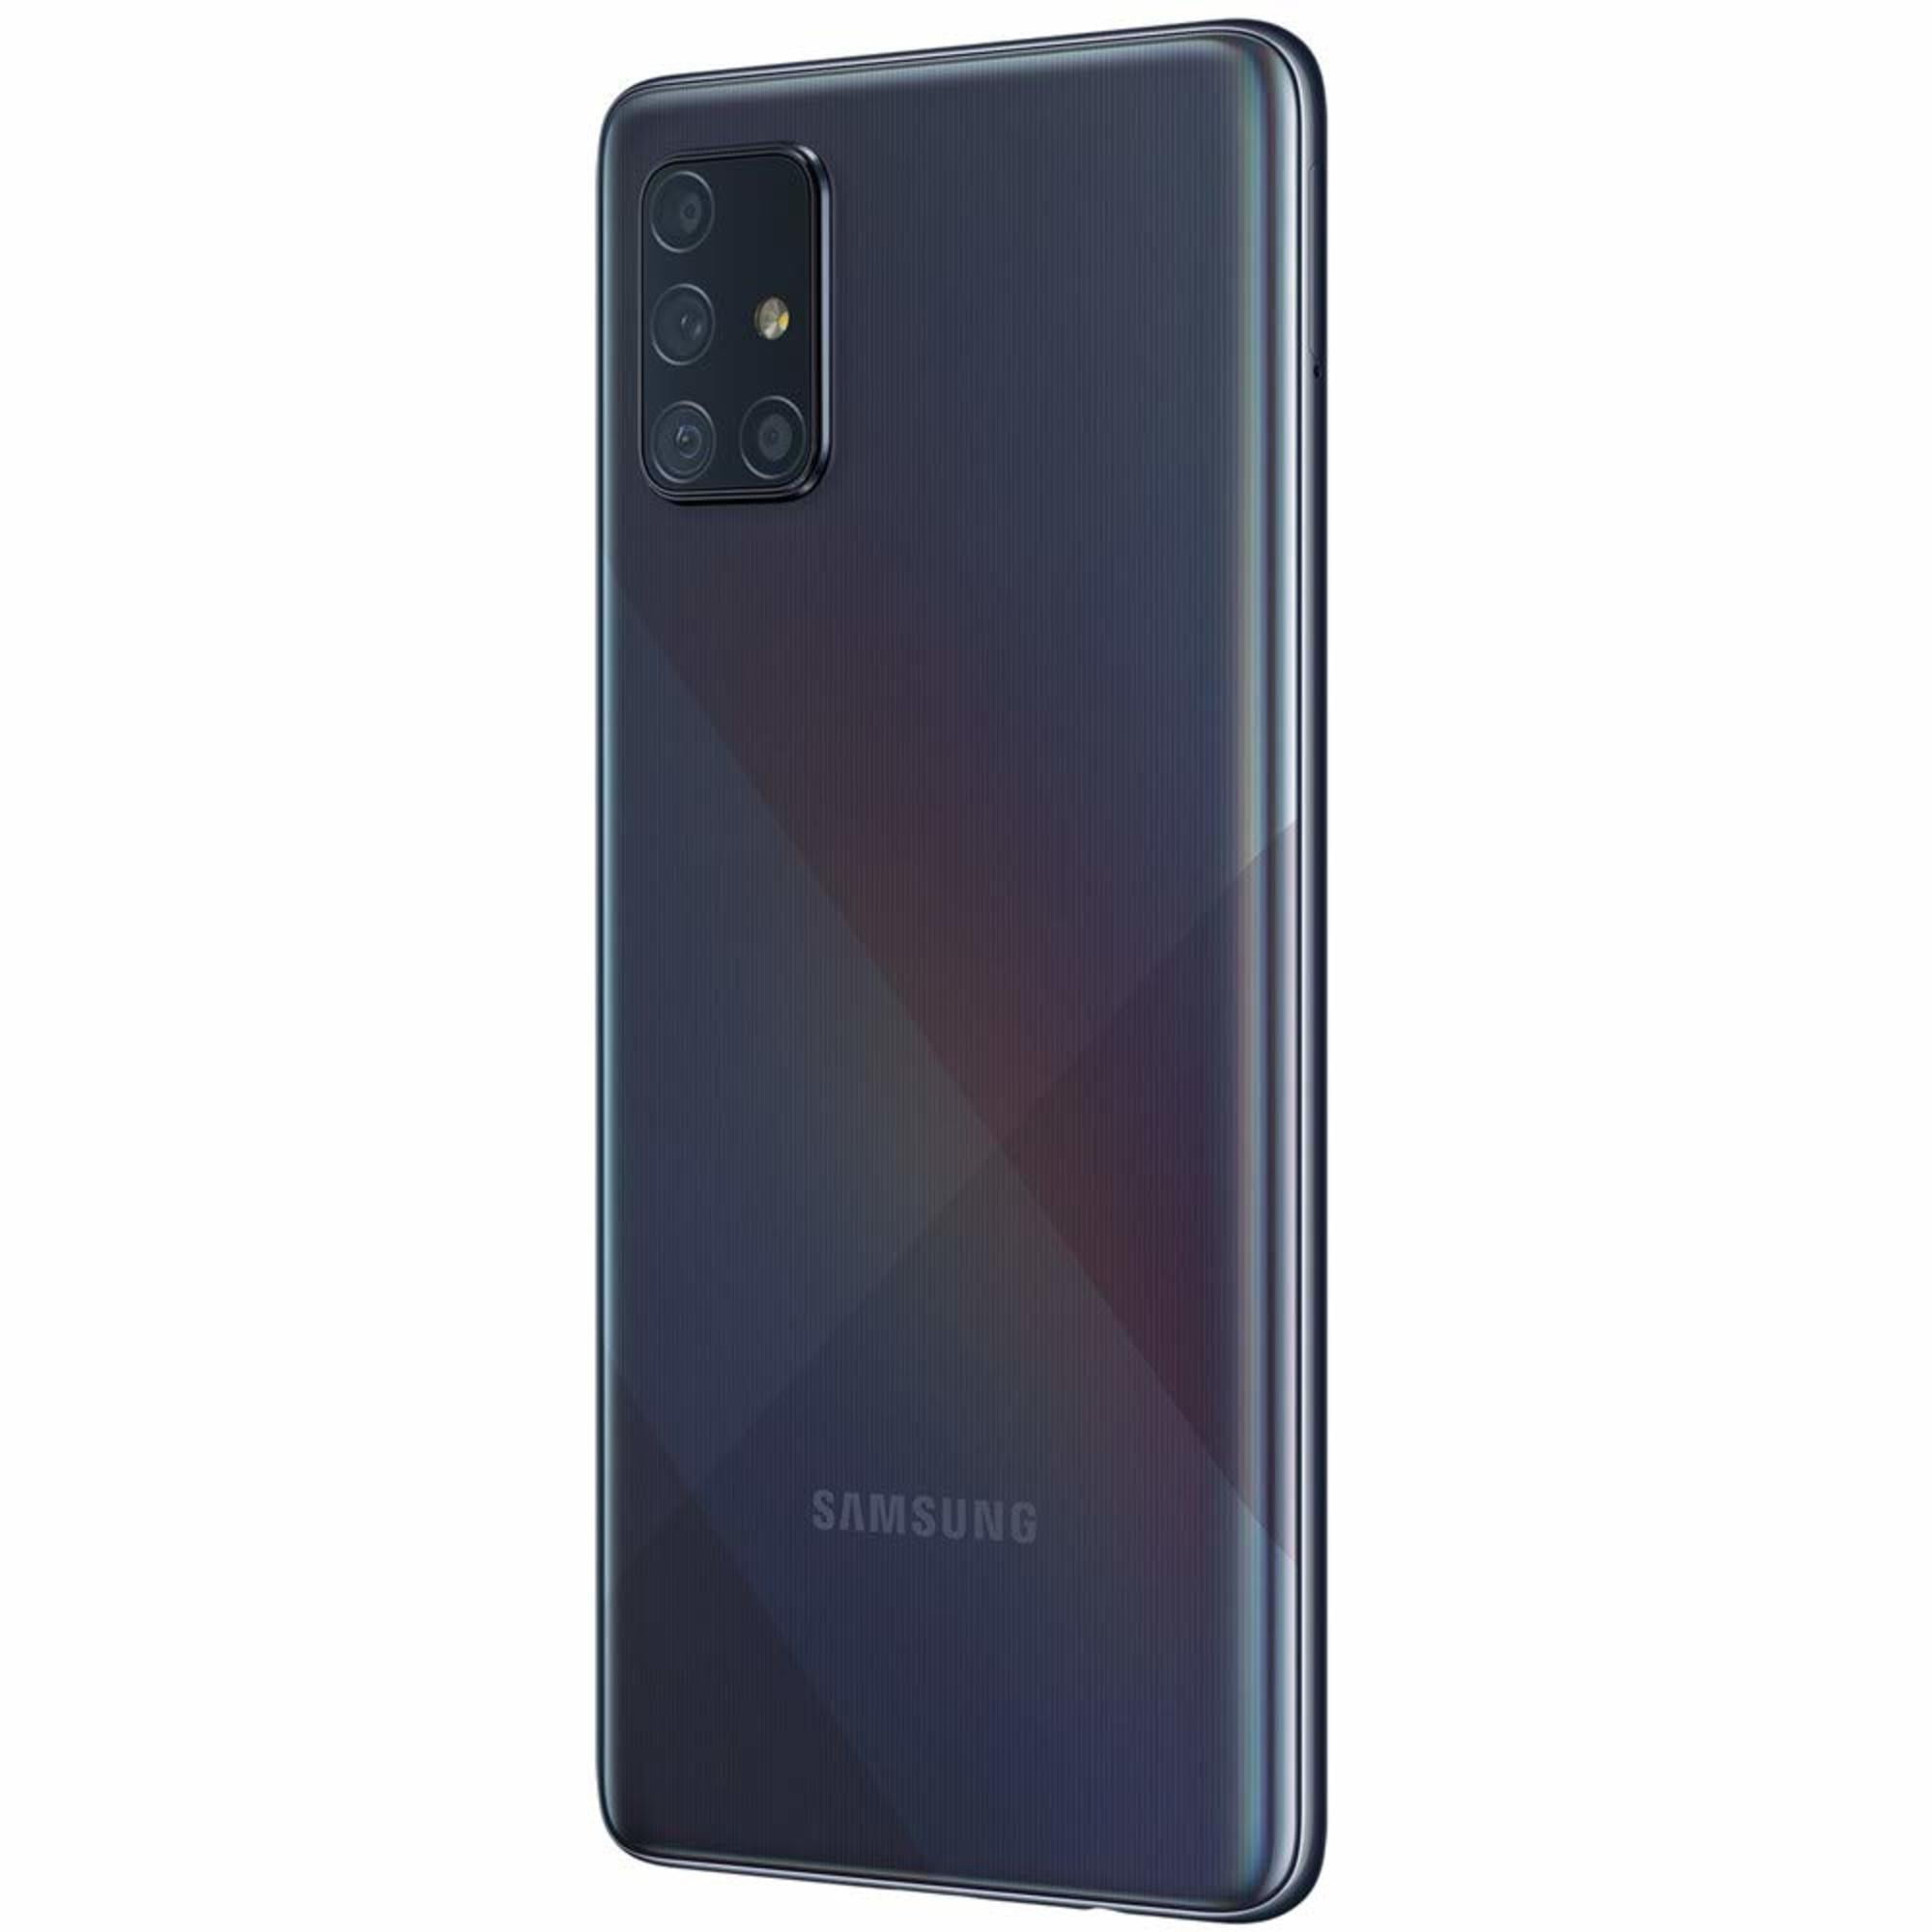 Samsung Galaxy A71 A715F 128GB Dual-SIM GSM Unlocked Phone 